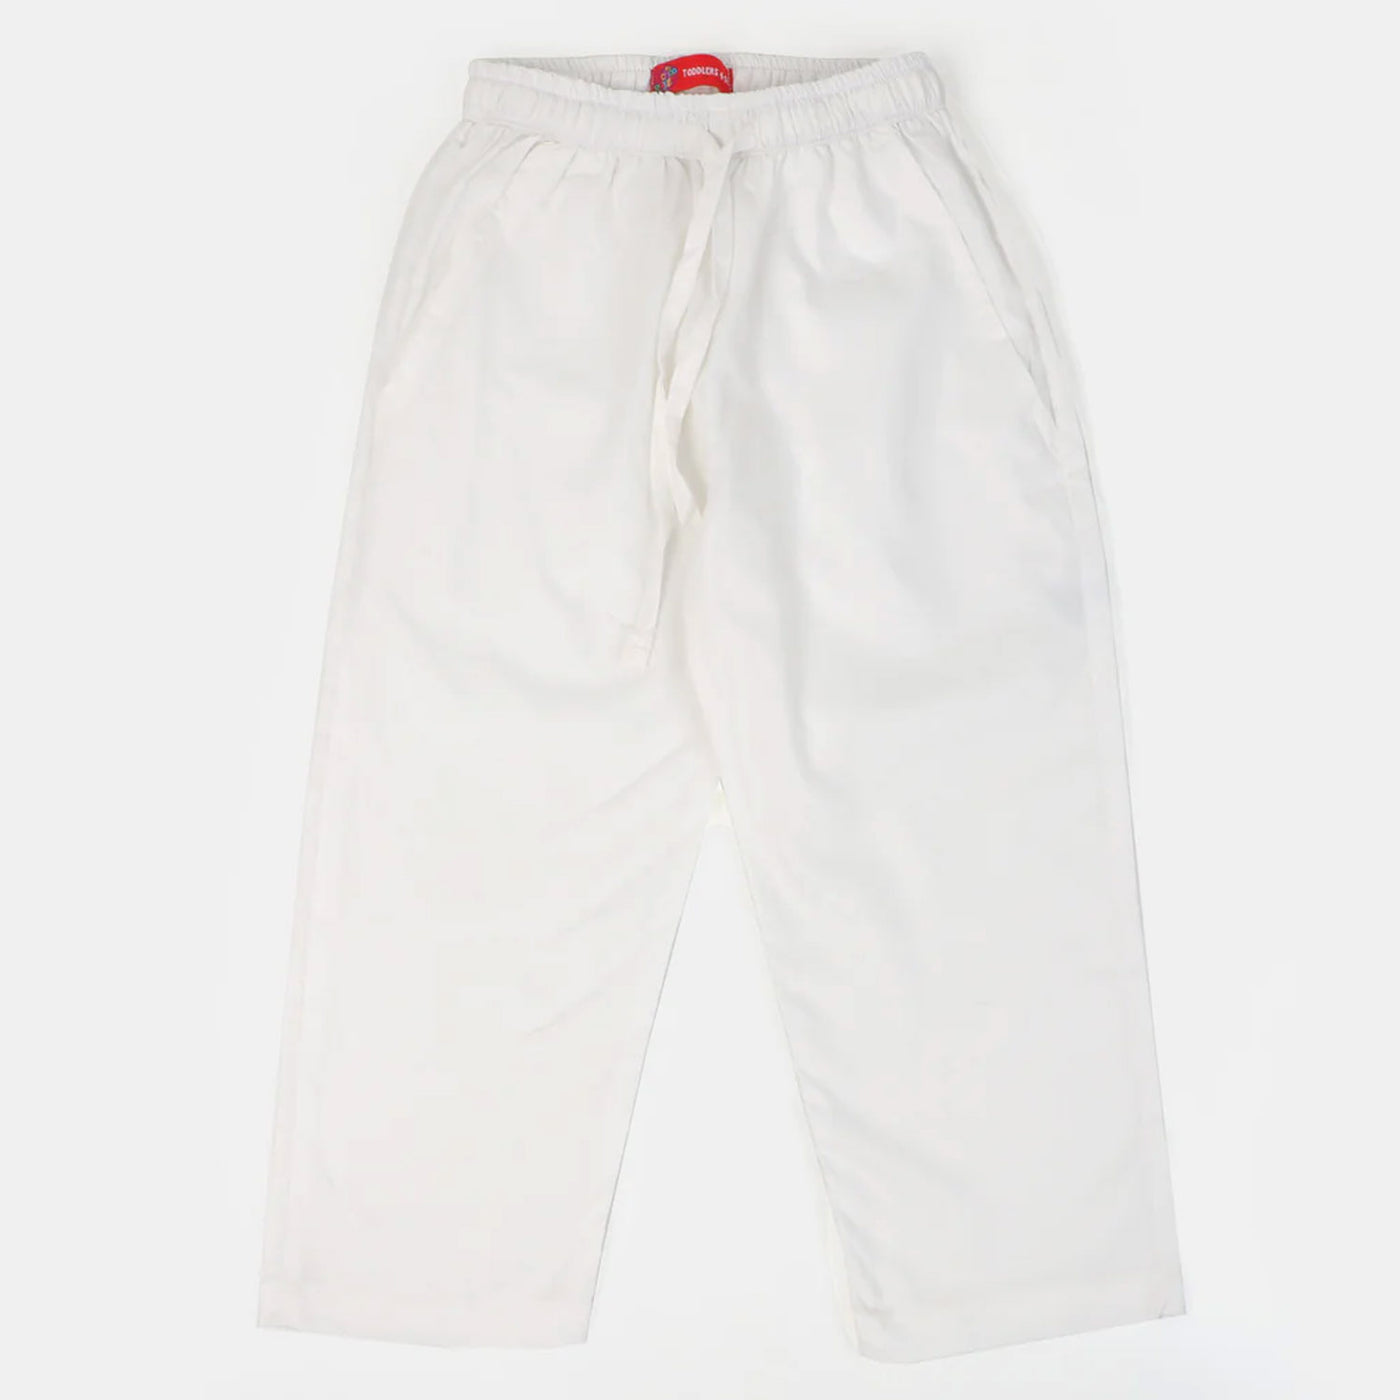 Boys Pocket Pajama - White